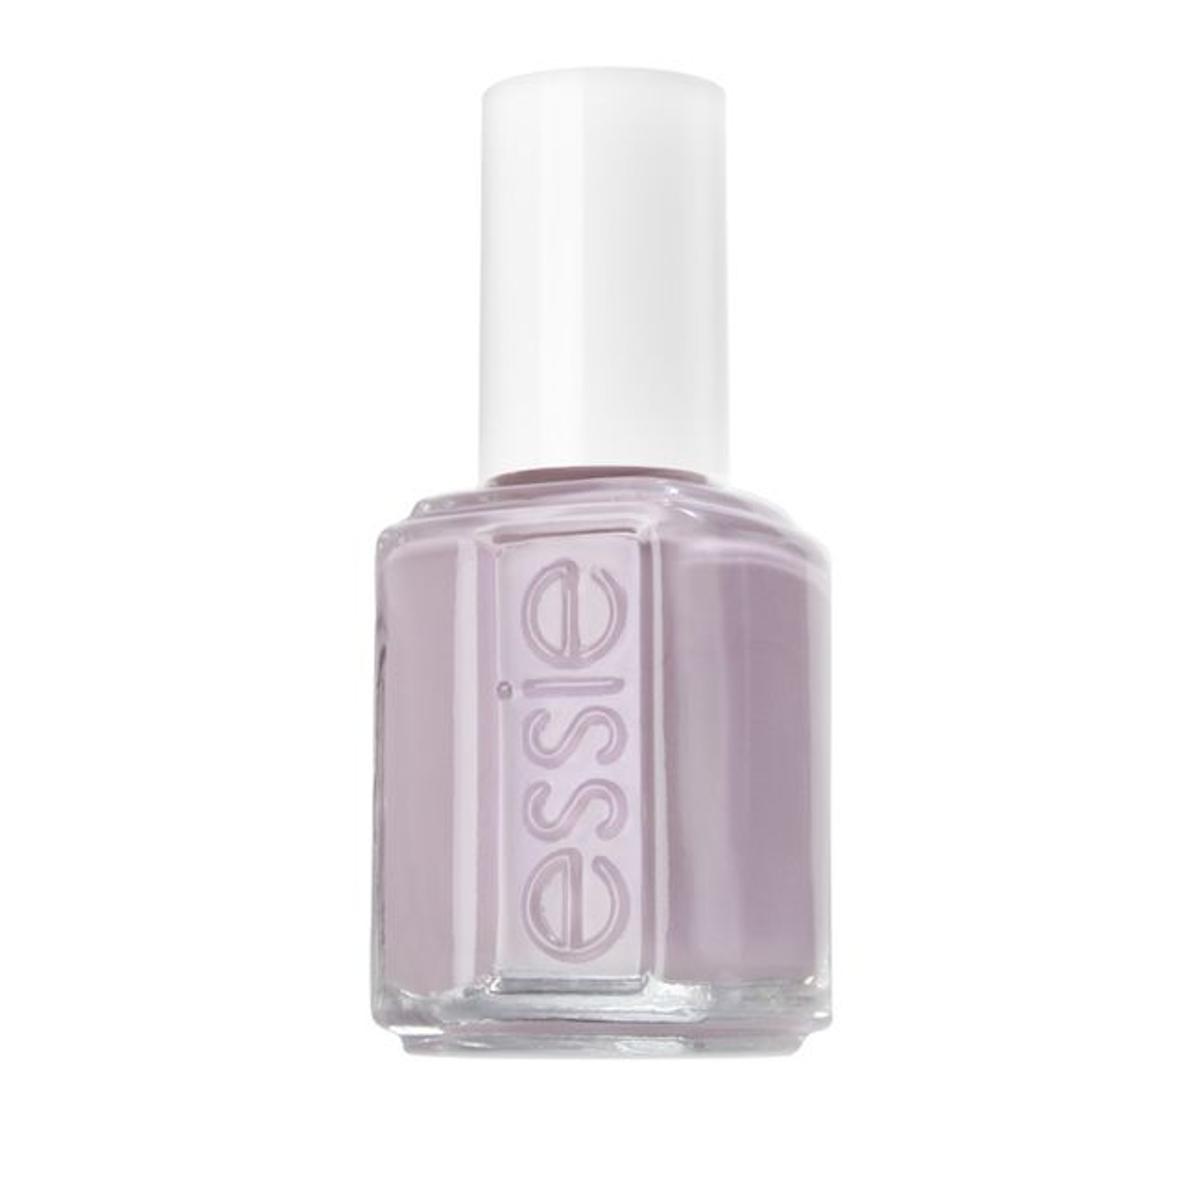 Esmalte de uñas tono ‘Lilacism’ de Essie